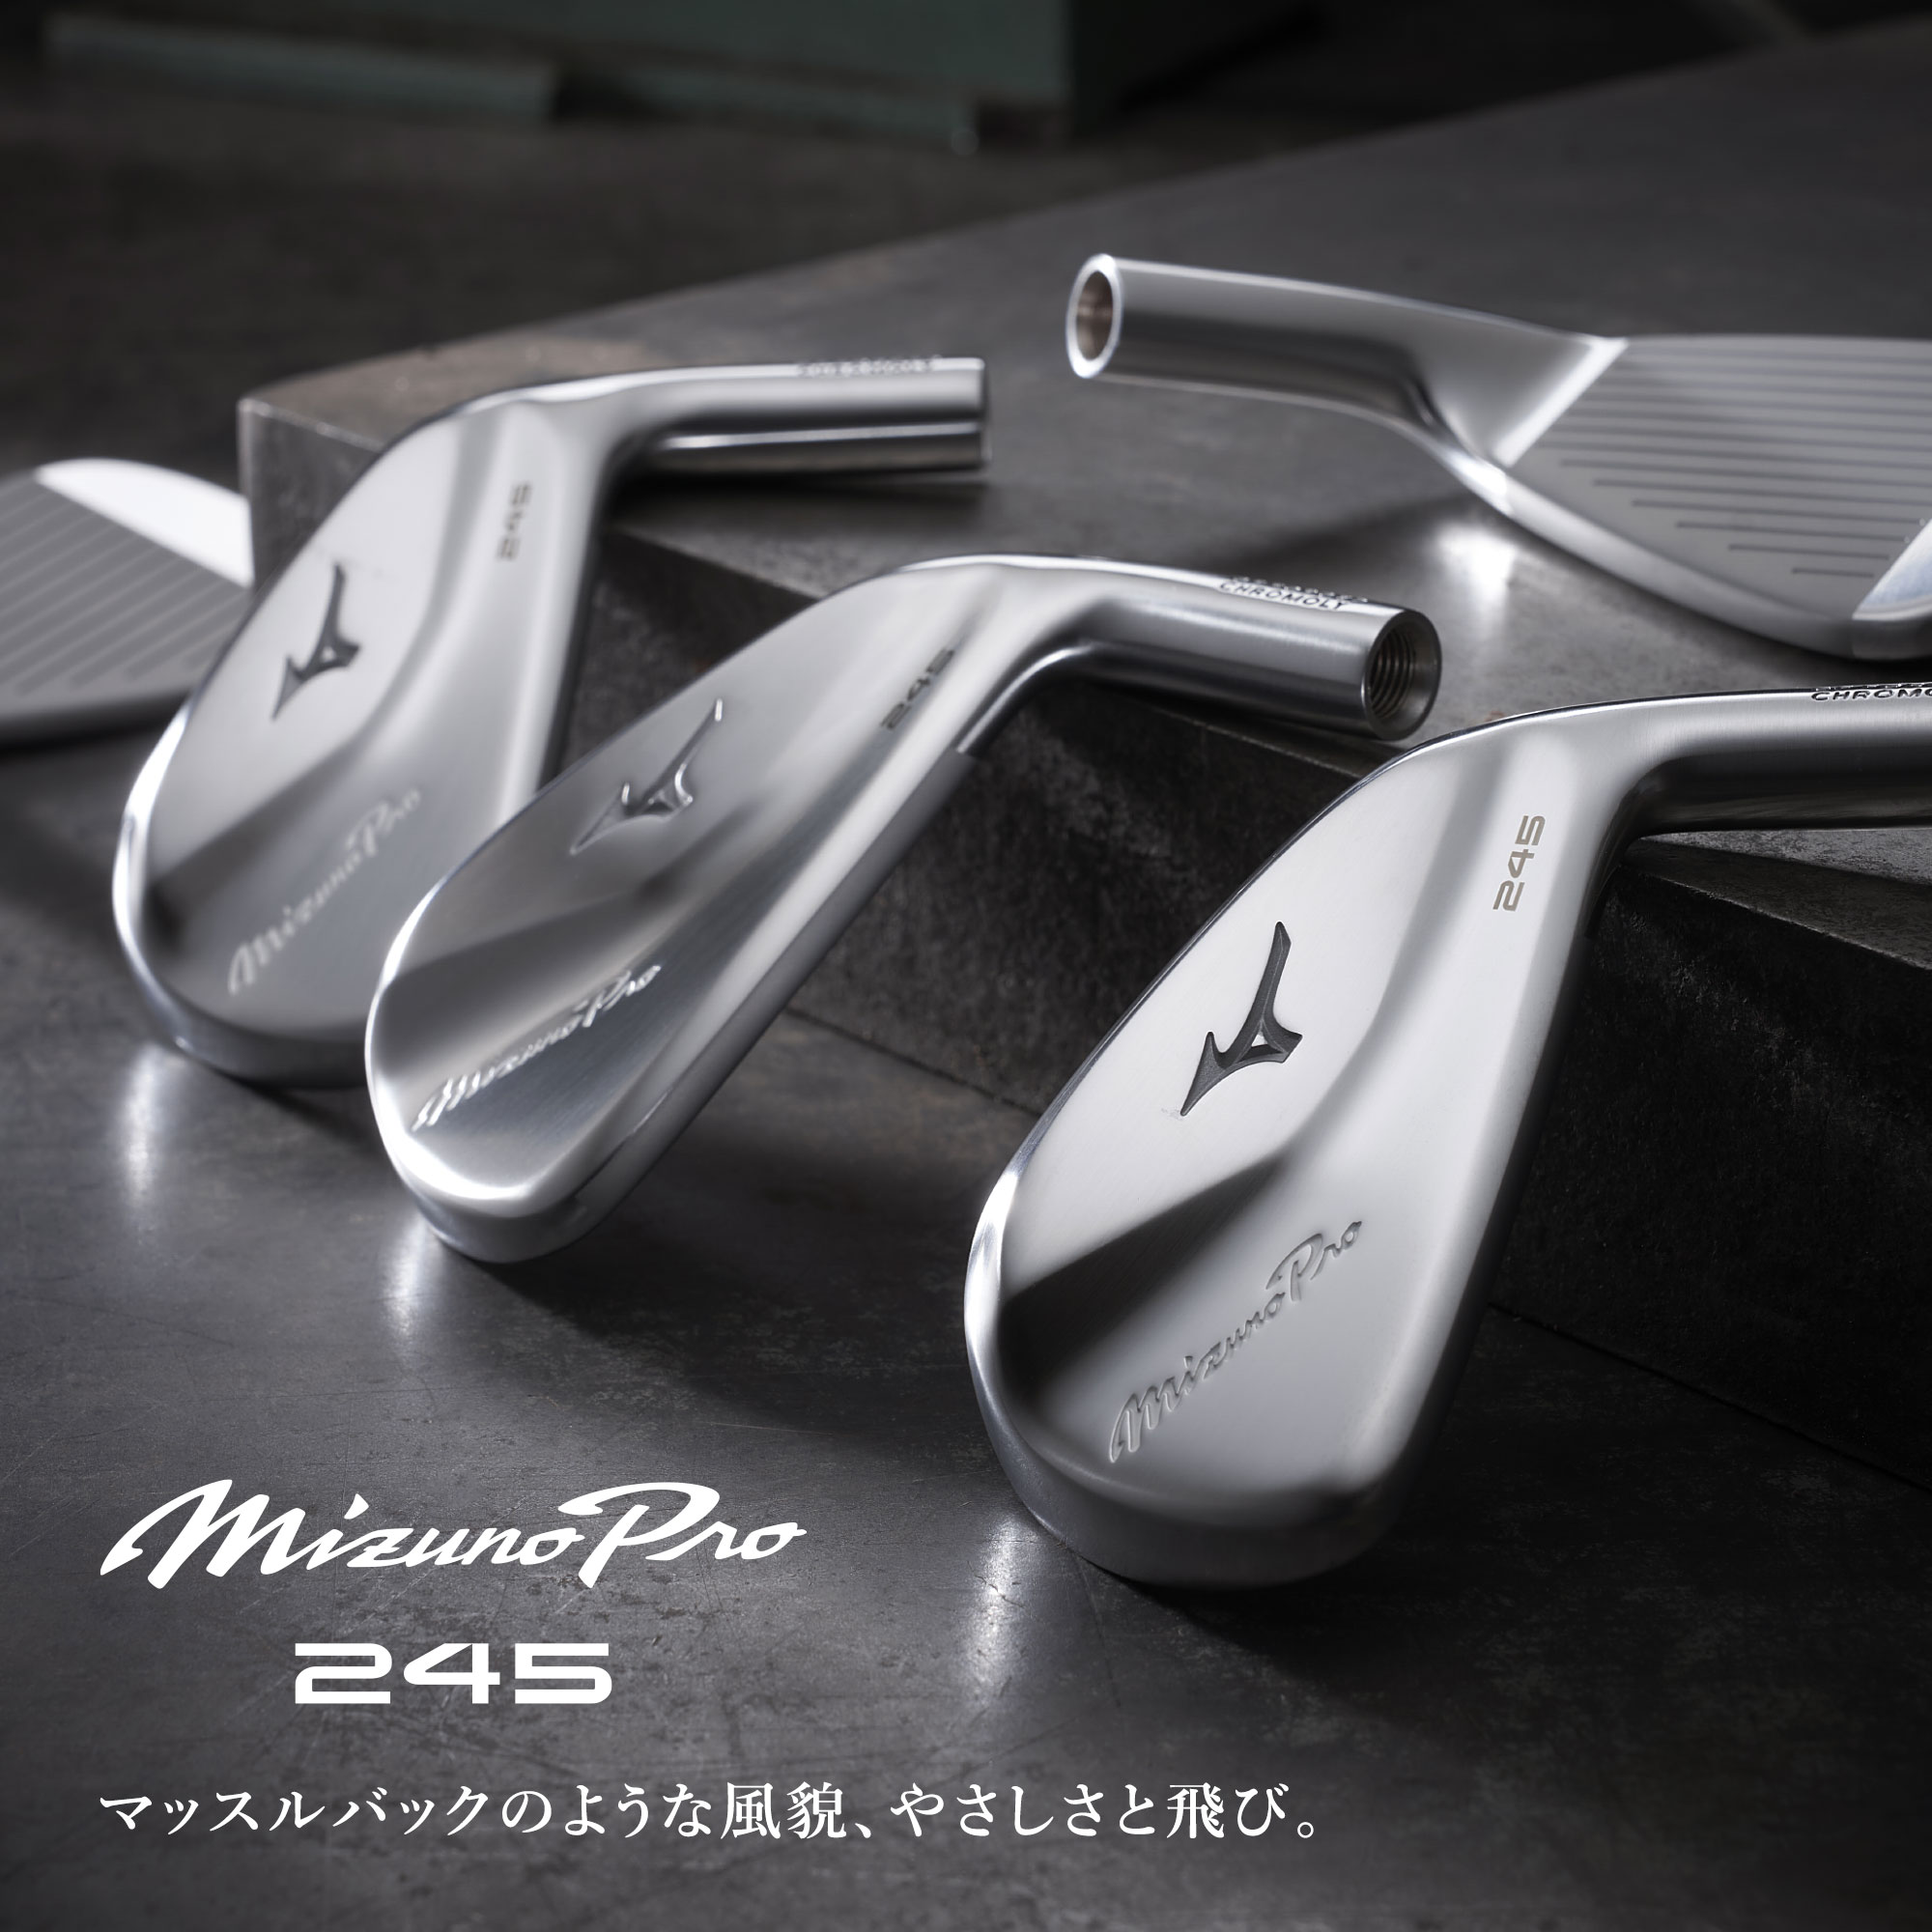 Mizuno Pro 245 アイアン 単品(No.4、GW)(N.S.PRO MODUS3 TOUR105 スチールシャフト 付)|5KJXB33370|クラブ|ゴルフ|ミズノ公式オンライン